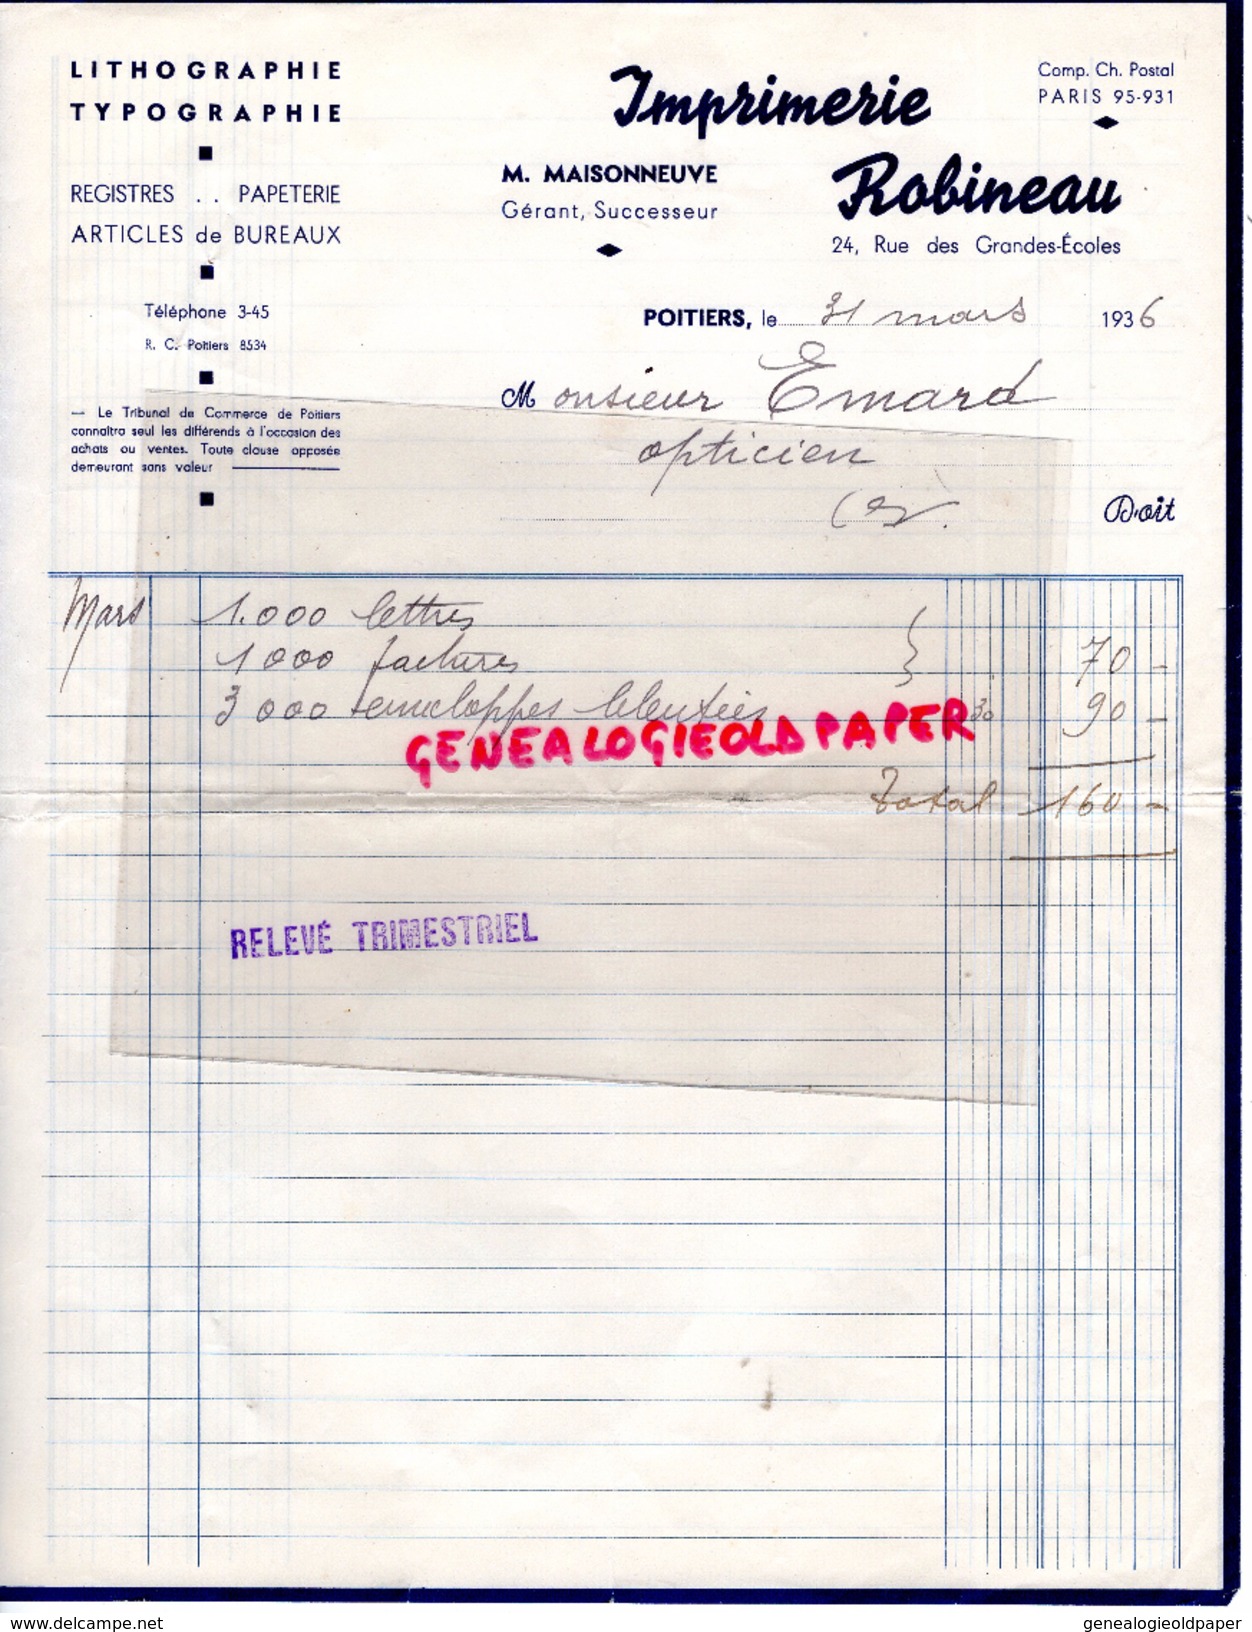 86 - POITIERS - FACTURE IMPRIMERIE ROBINEAU- M. MAISONNEUVE- 24 RUE GRANDES ECOLES- LITHOGRAPHIE TYPOGRAPHIE-1936 - Imprenta & Papelería